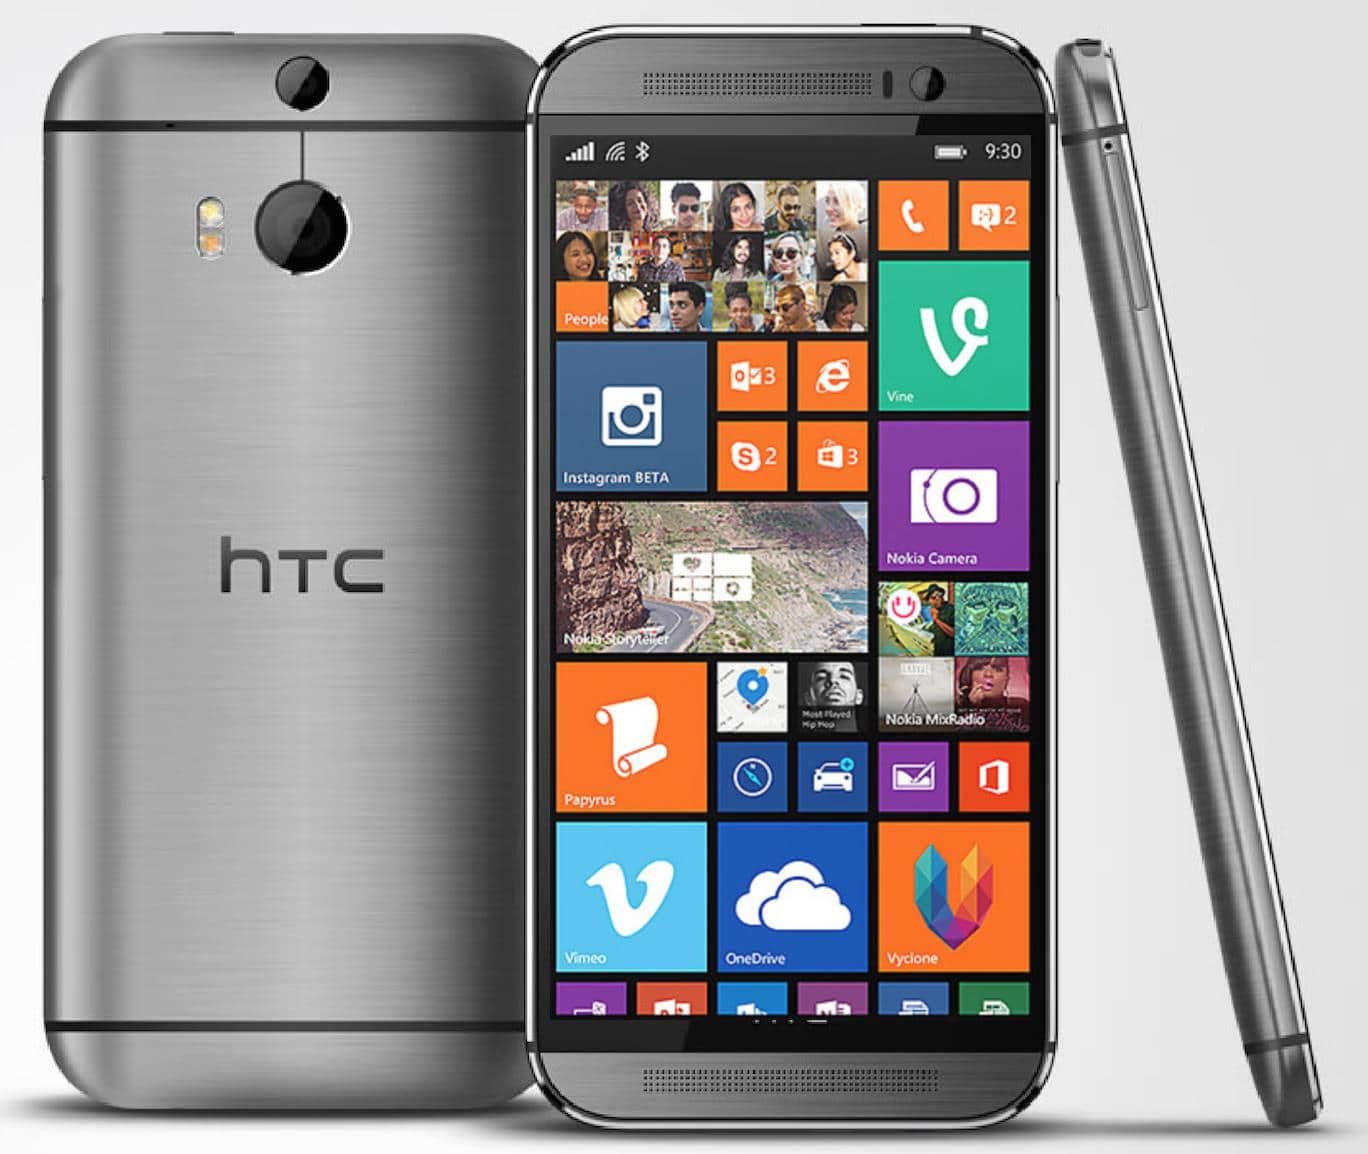 نزول هاتف htc one 8 بنظام الويندوز فون غداً من تي موبيل